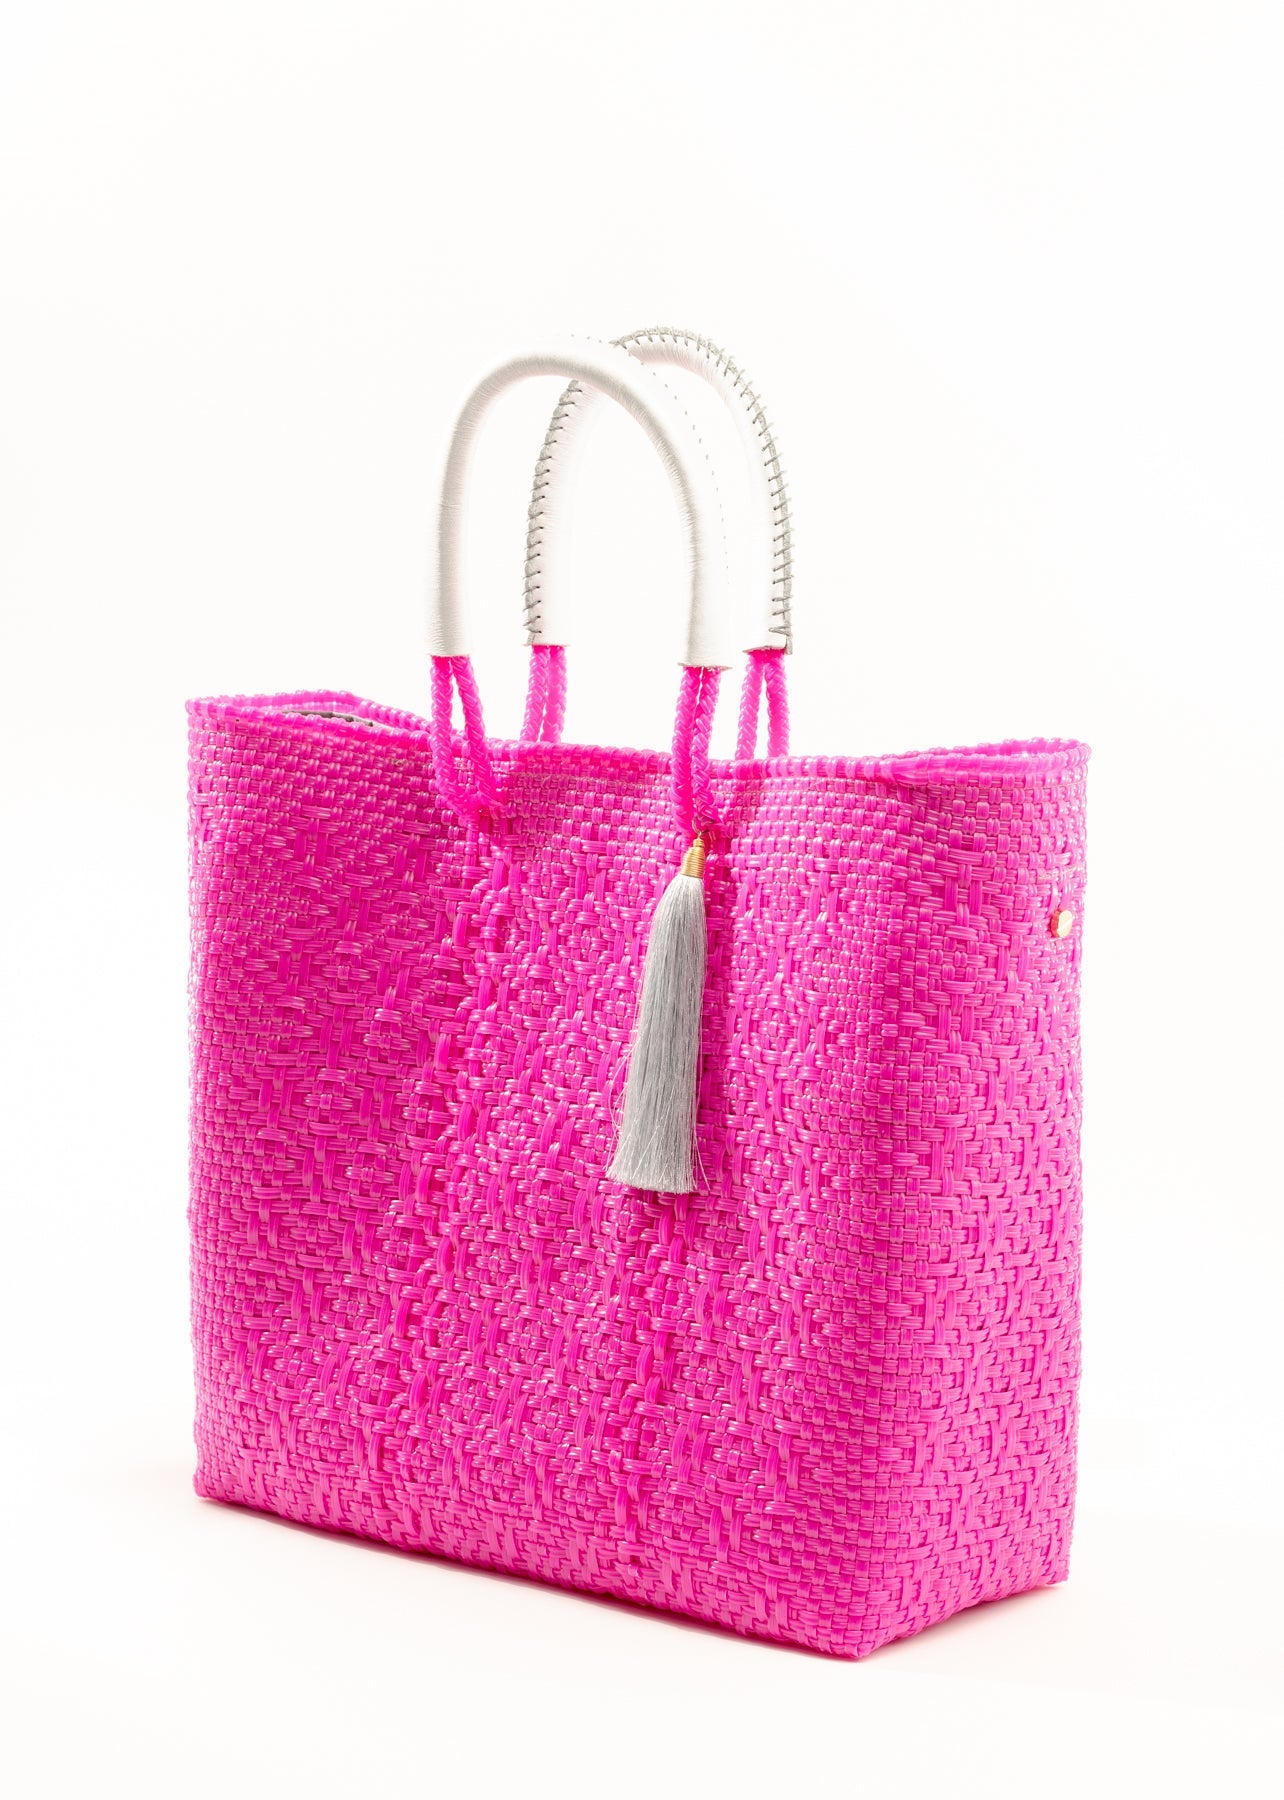 Lola Large Bag - Hot Pink